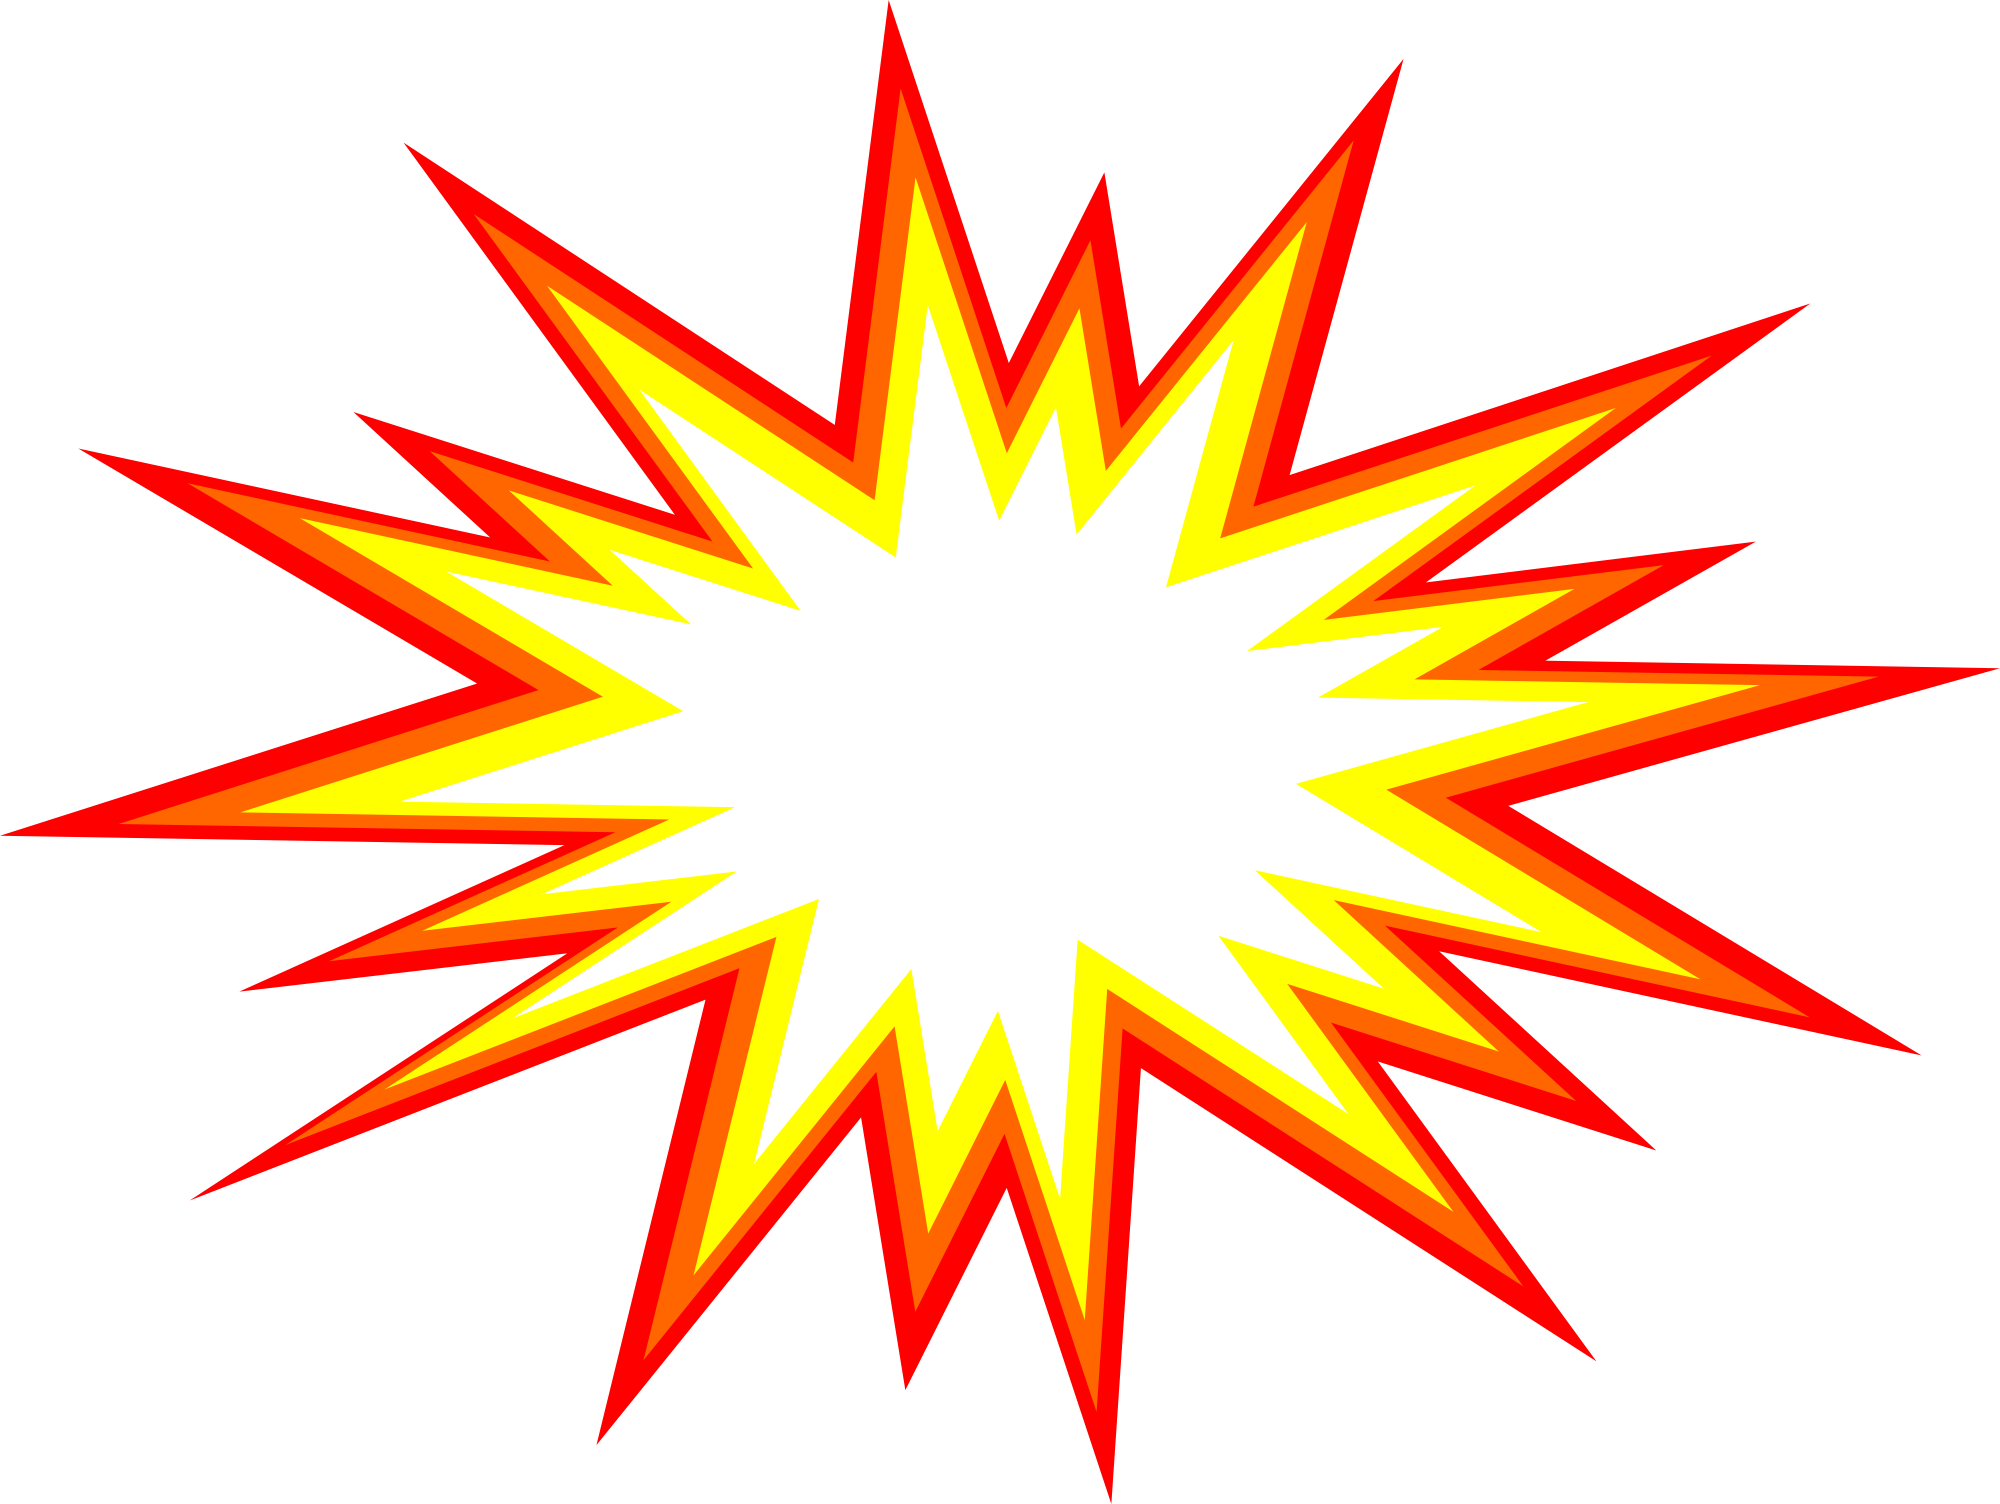 Starburst Explosion Background PNG Image